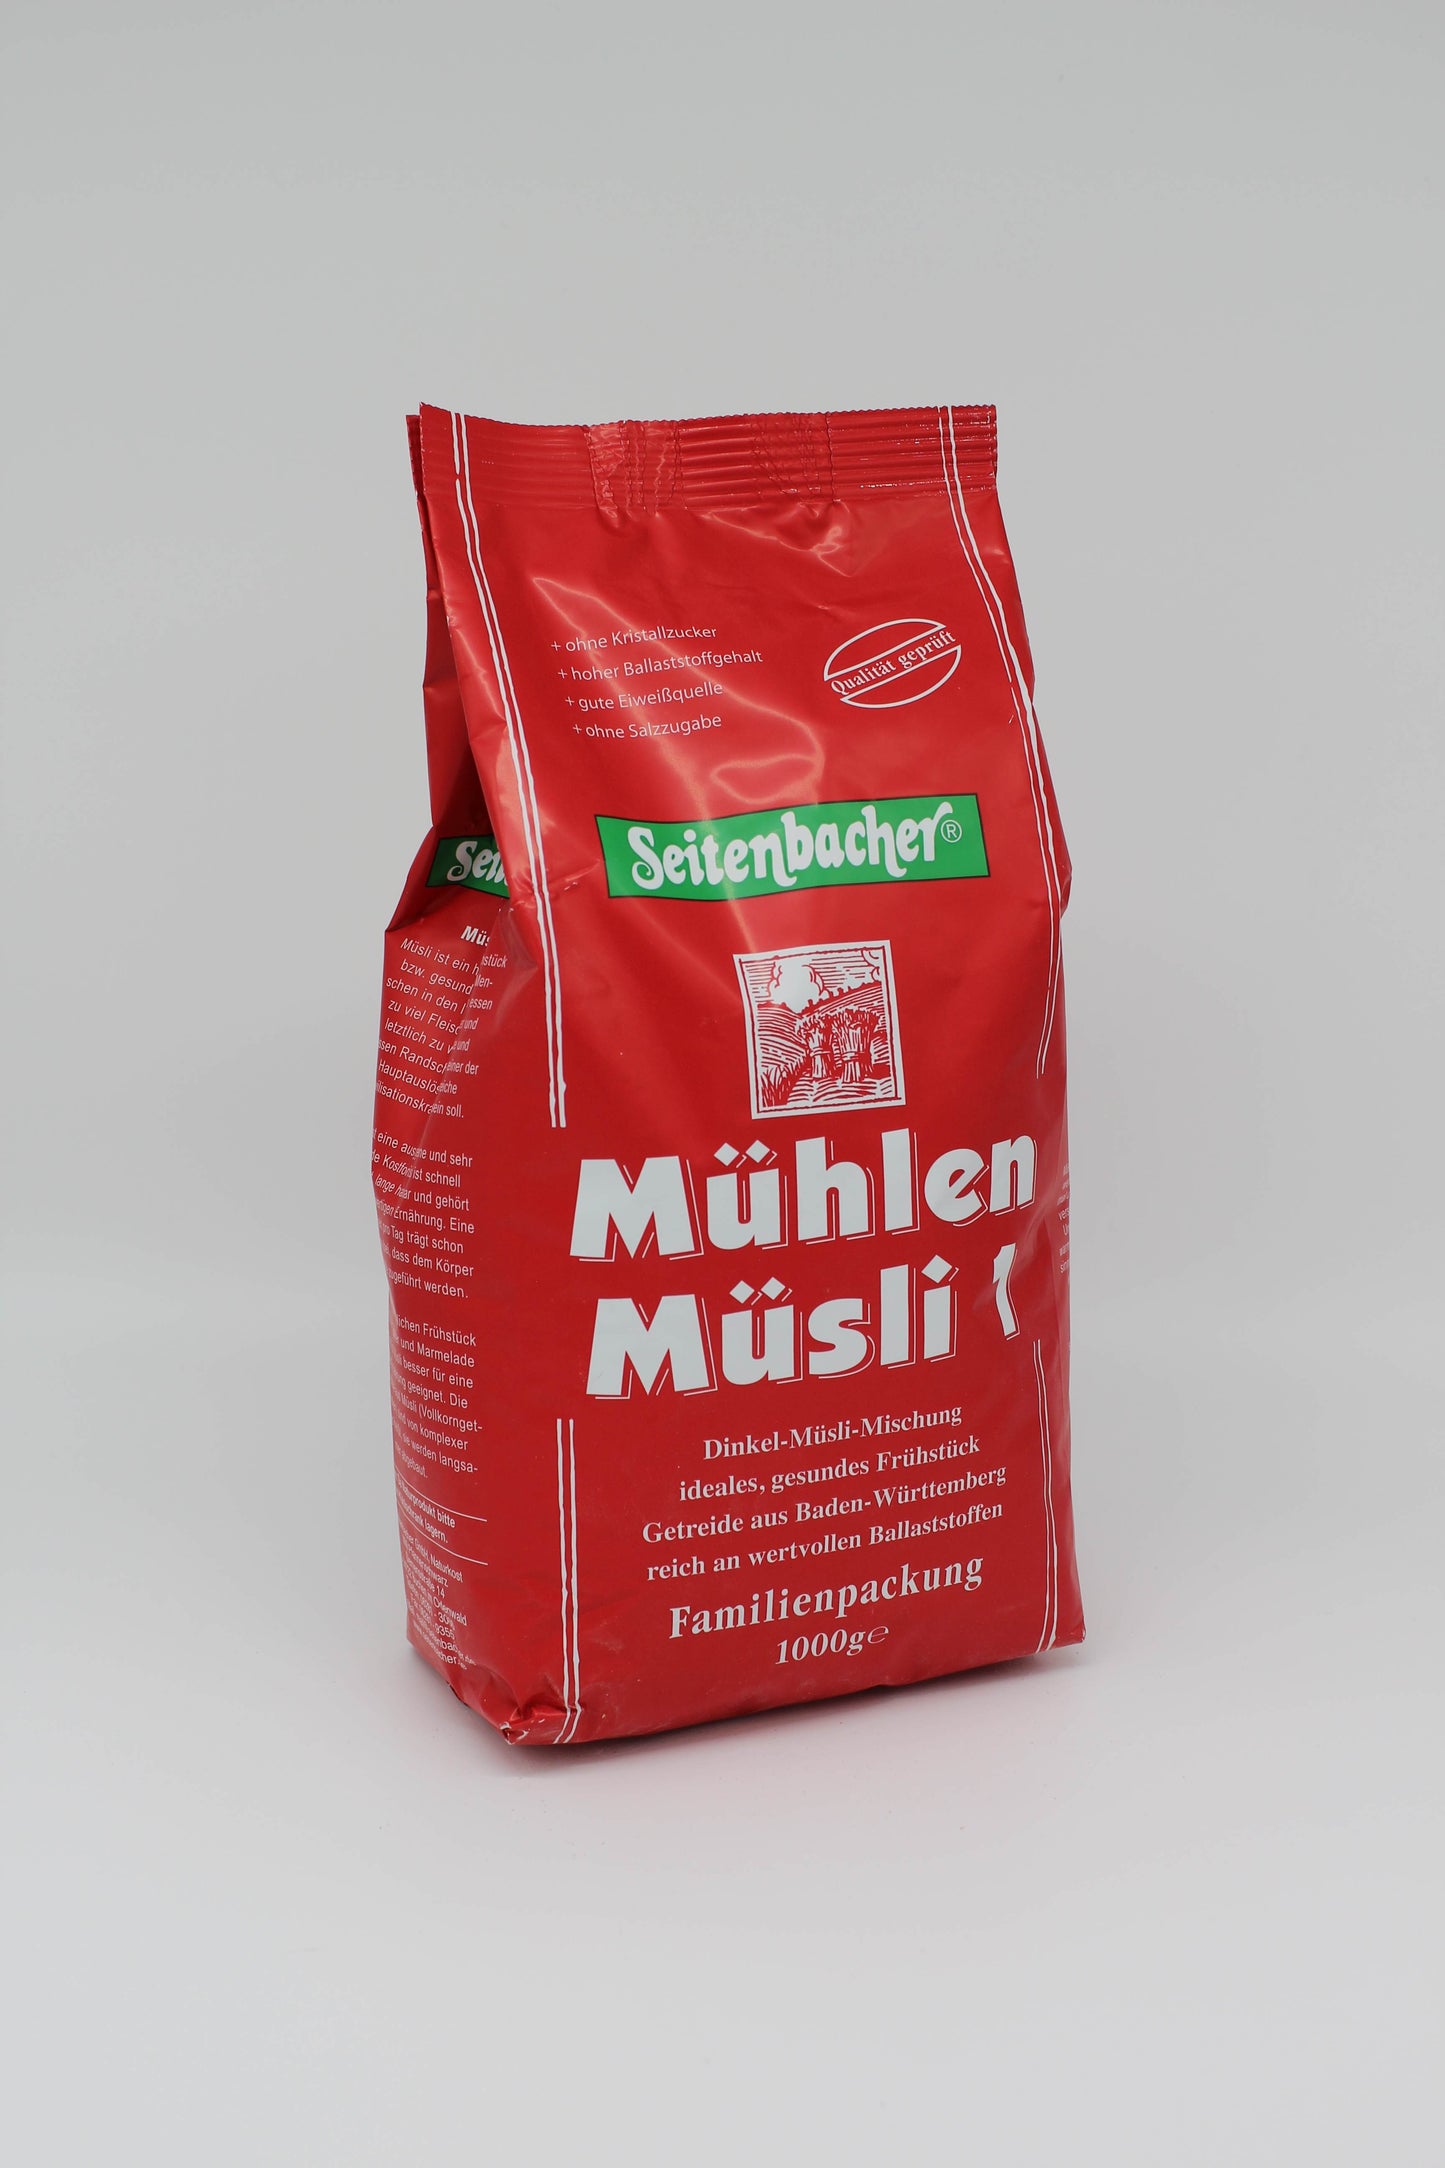 Seitenbacher Mühlenmüsli 1, 1kg